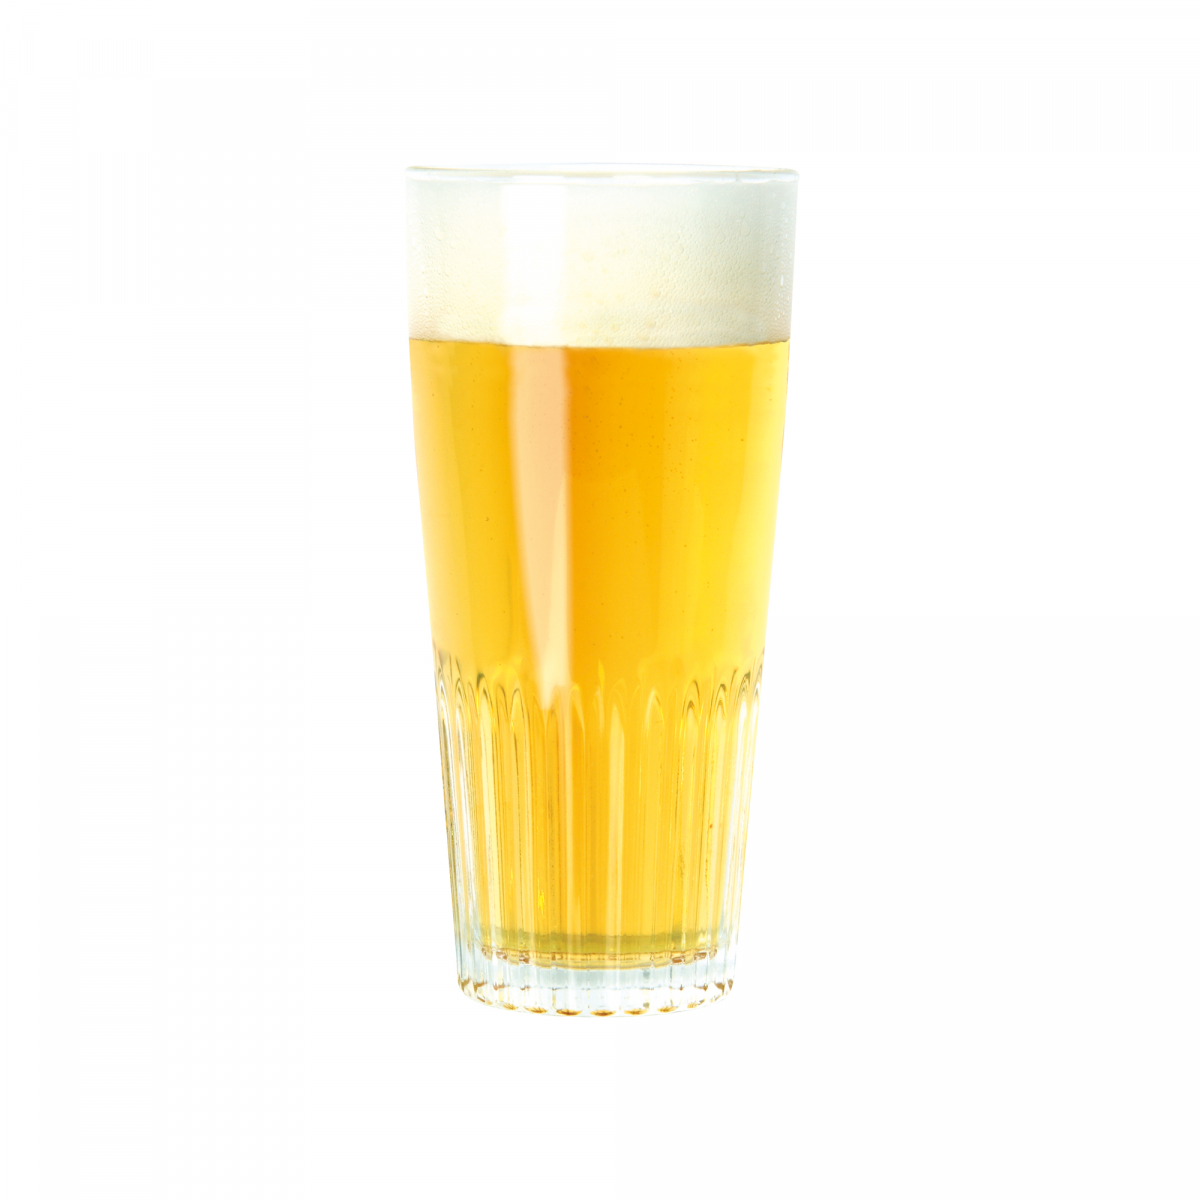 Brewferm kit de bière Pilsner